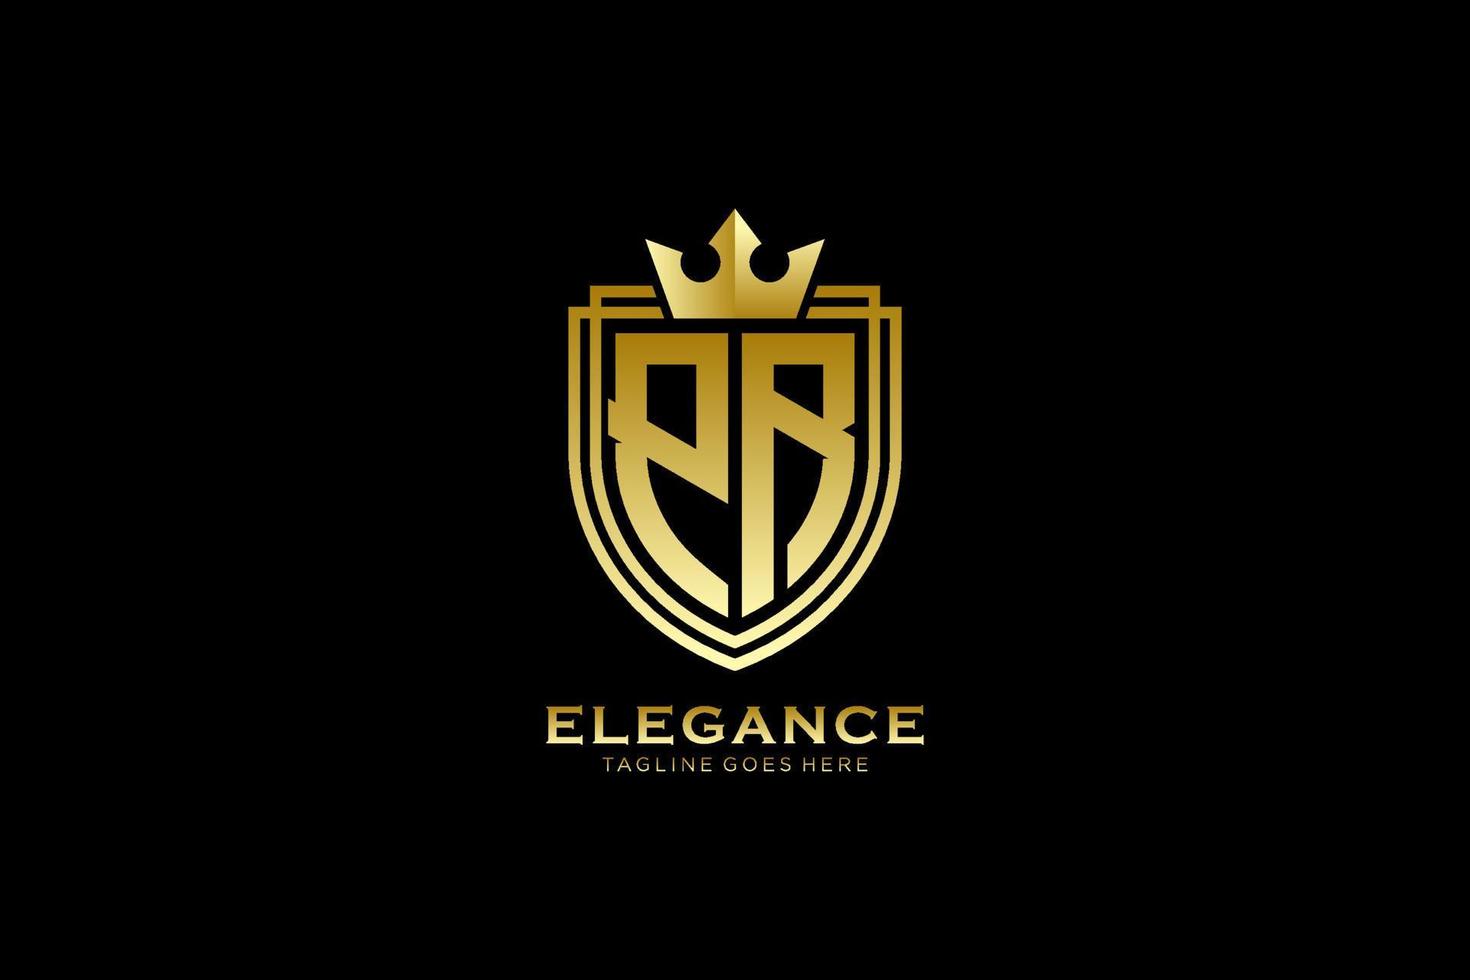 logotipo de monograma de lujo inicial pr elegante o plantilla de insignia con pergaminos y corona real - perfecto para proyectos de marca de lujo vector